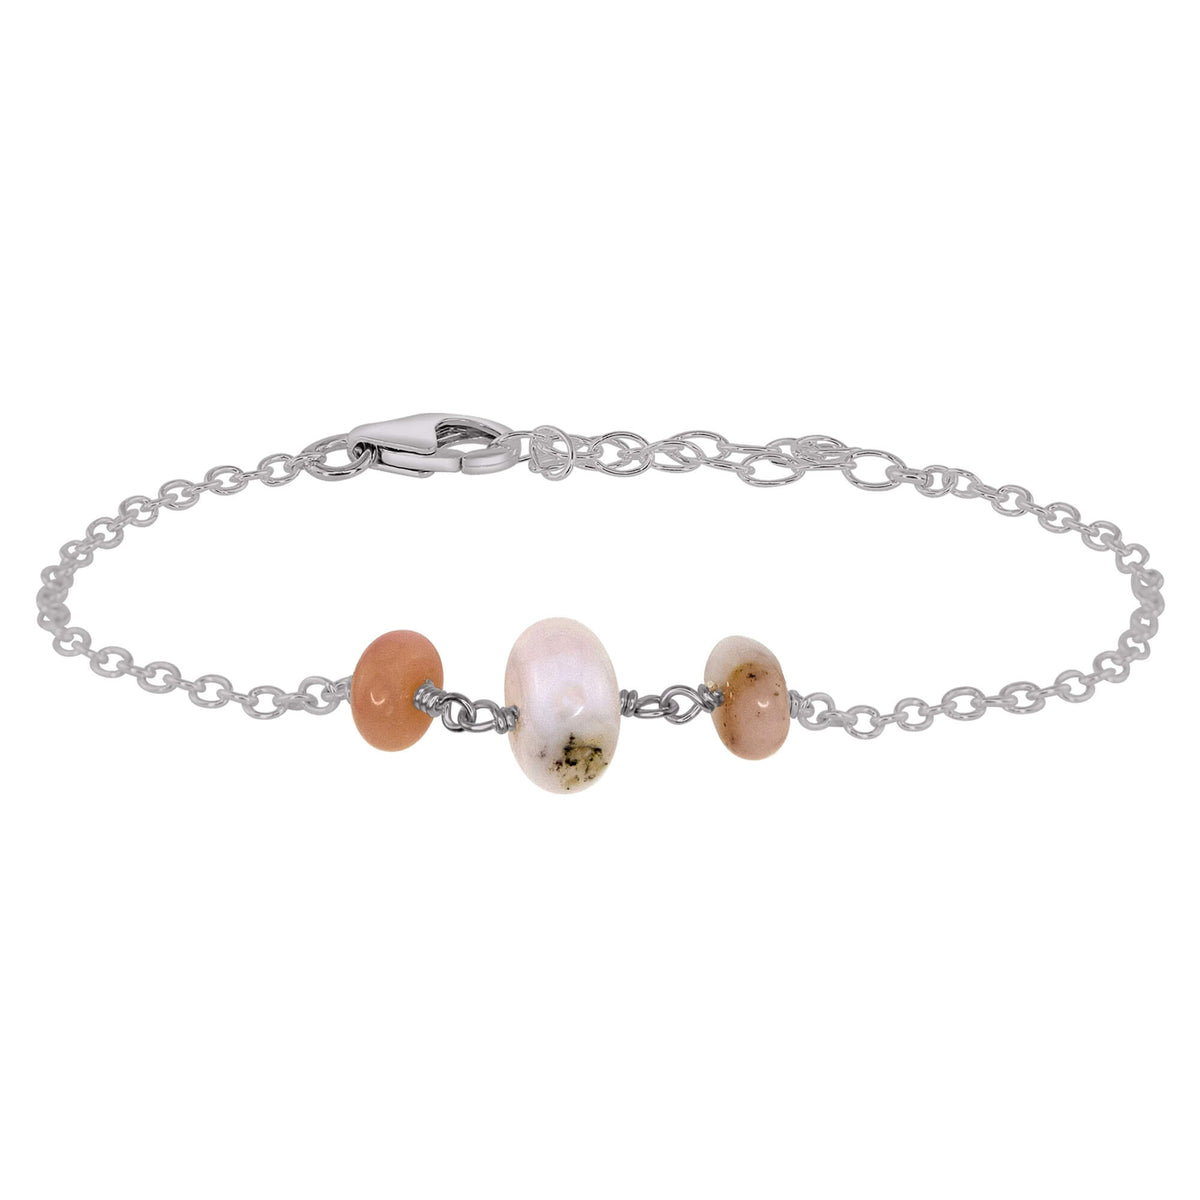 Beaded Chain Bracelet - Pink Peruvian Opal - Stainless Steel - Luna Tide Handmade Jewellery